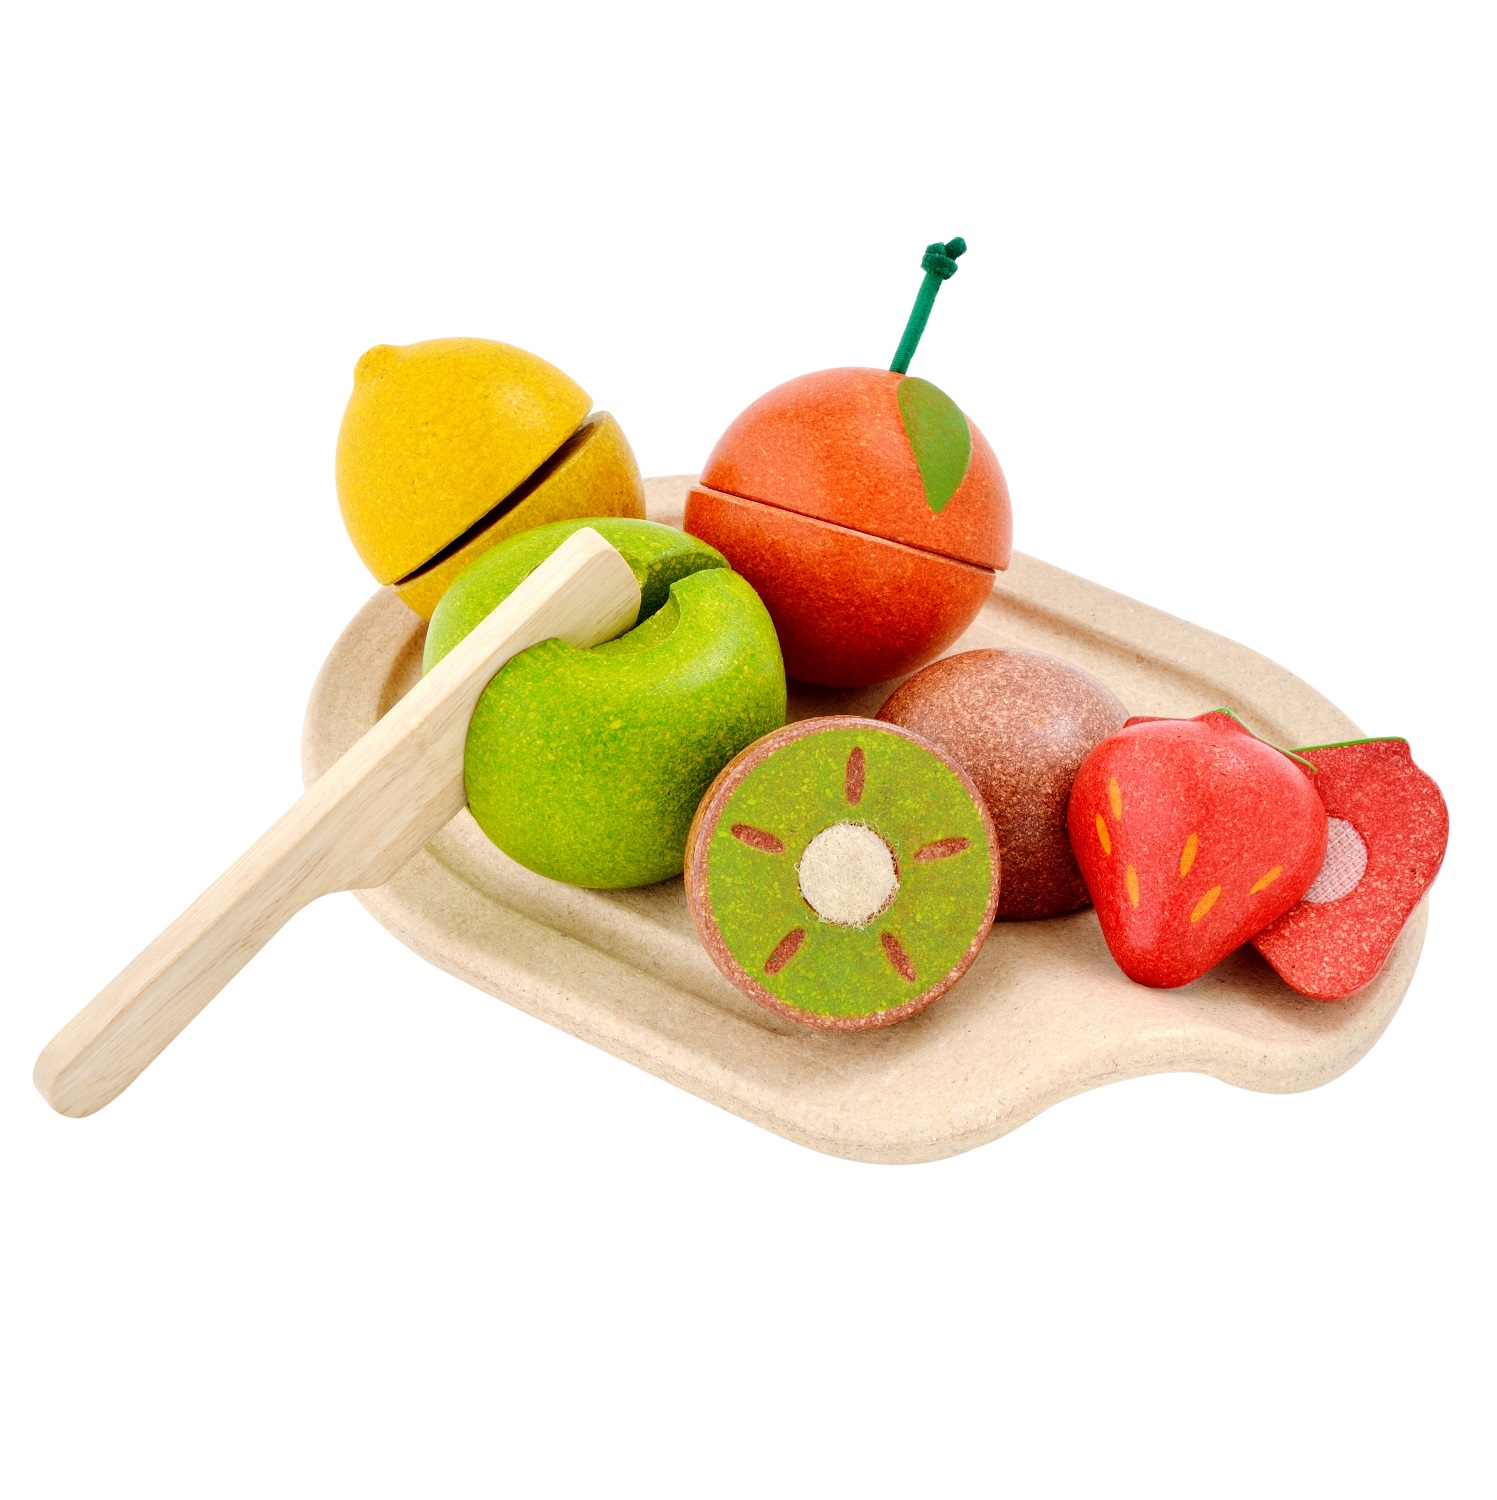 Schneiden Sie Obst und Gemüse New 8pcs Hölzernes Küche Kinder Spielzeug 